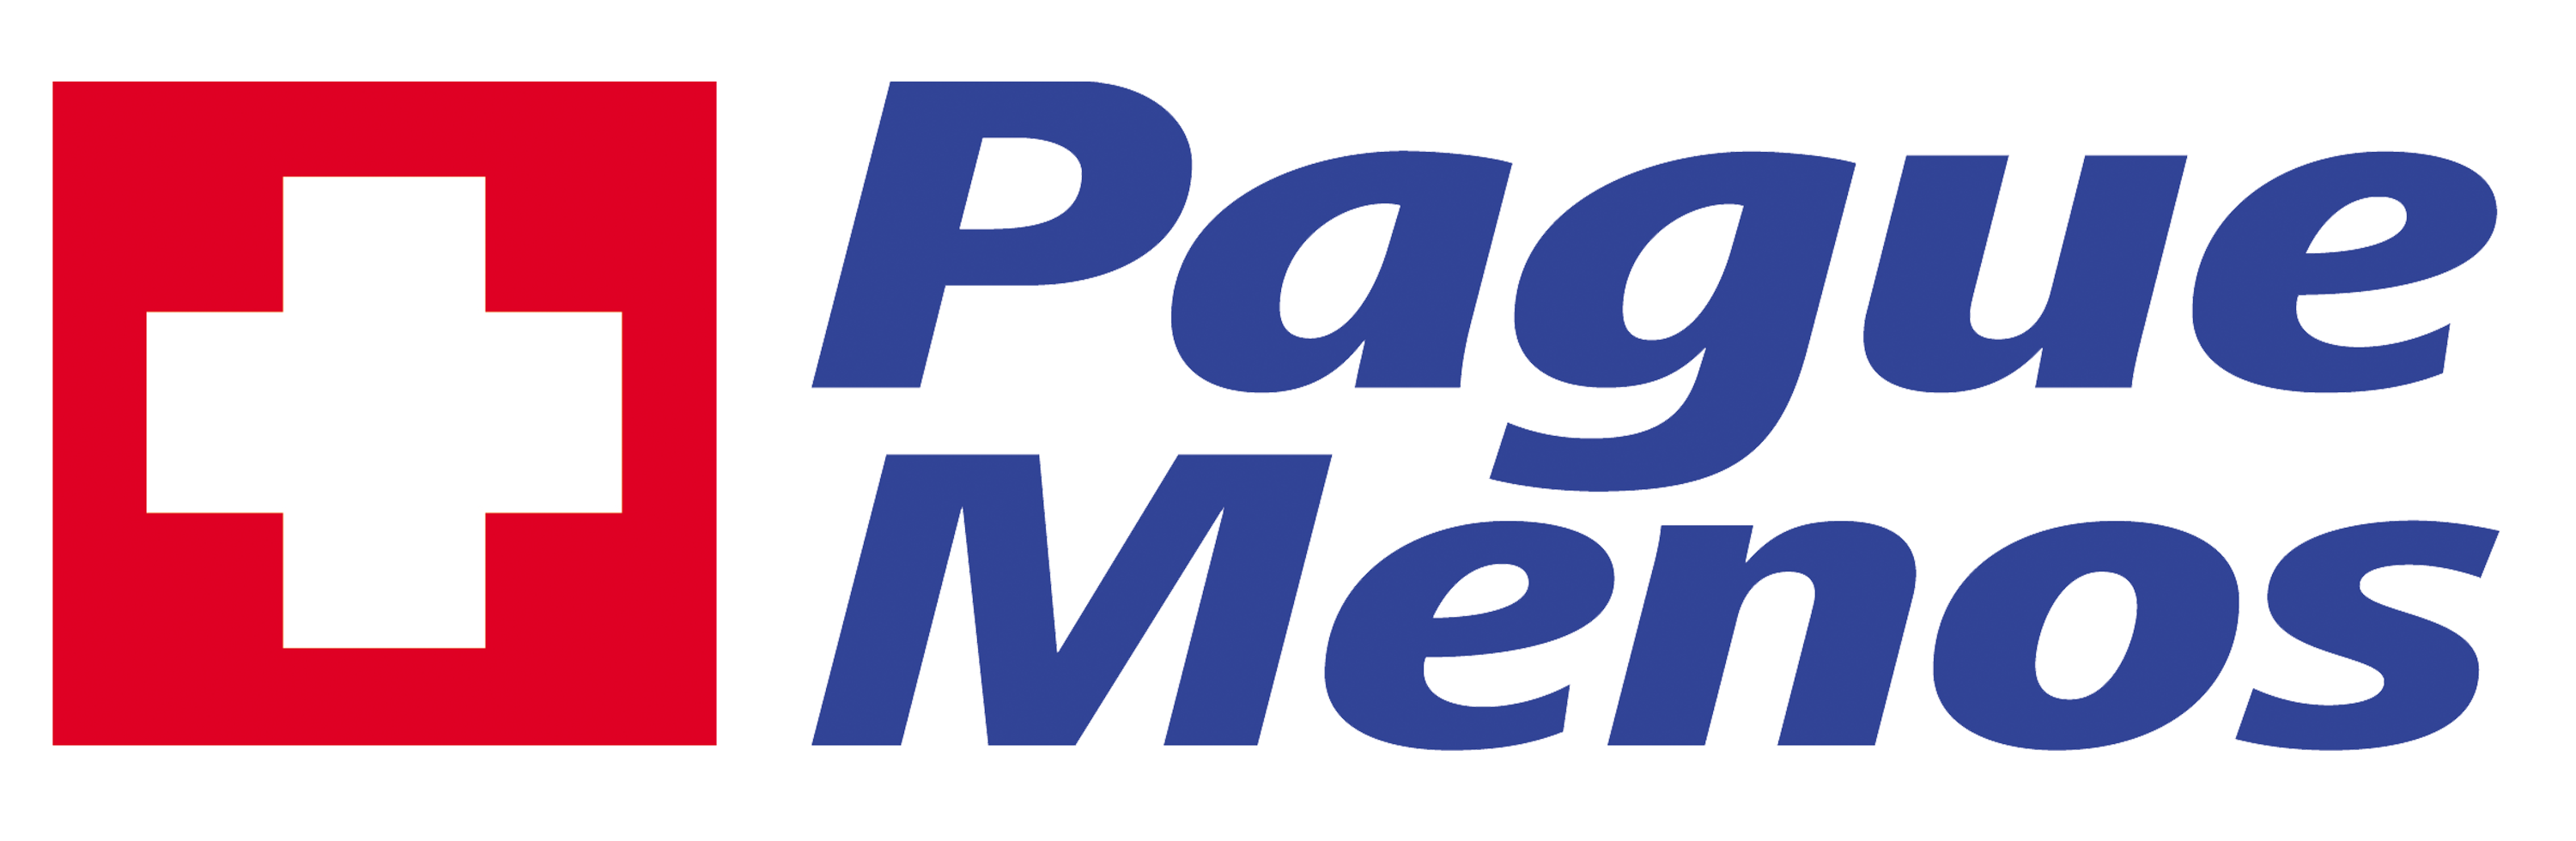 Farmacia Pague Menos - Amazonas - MG